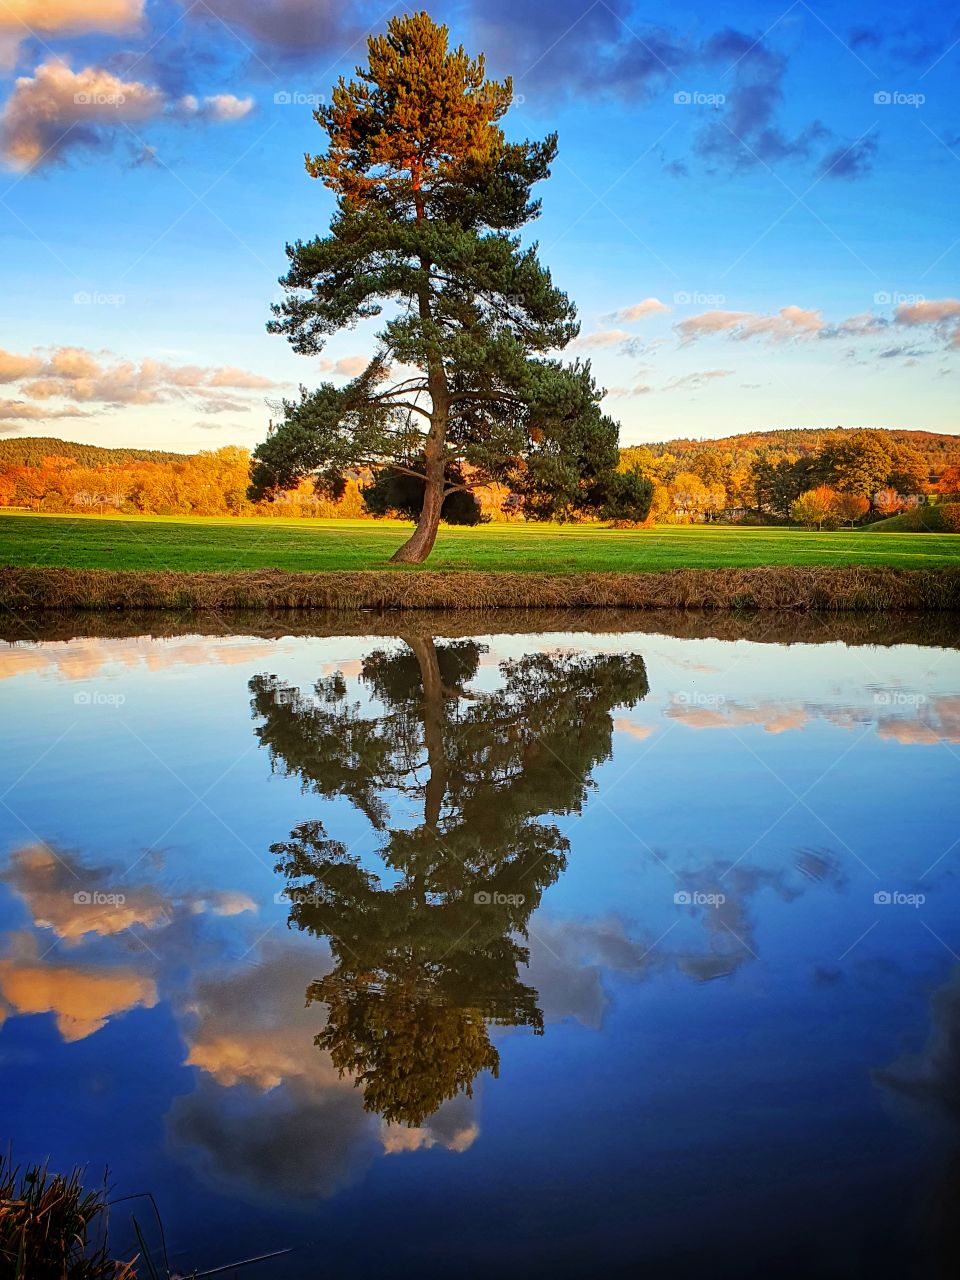 beautiful tree scene mirrored in lake